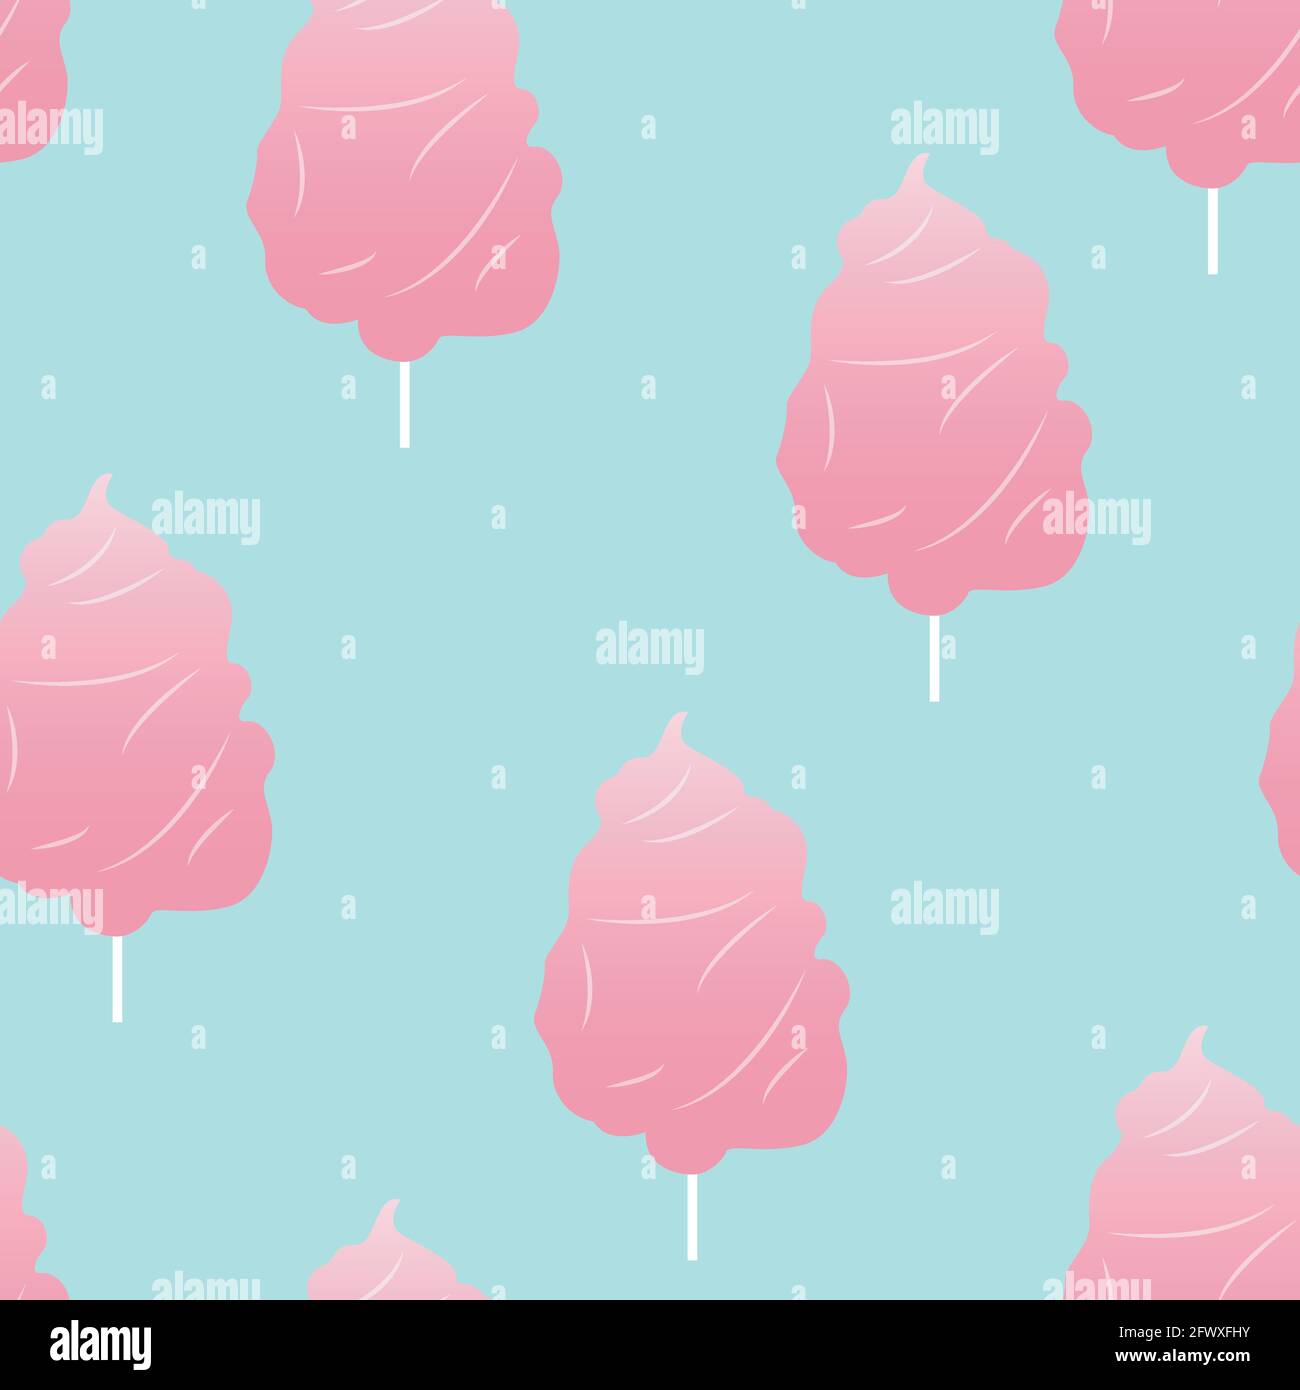 Baumwollbonbon nahtloses Muster Vektor-Illustration in flachem Design flauschig Pink Candy auf Stick auf blauem Hintergrund Stock Vektor